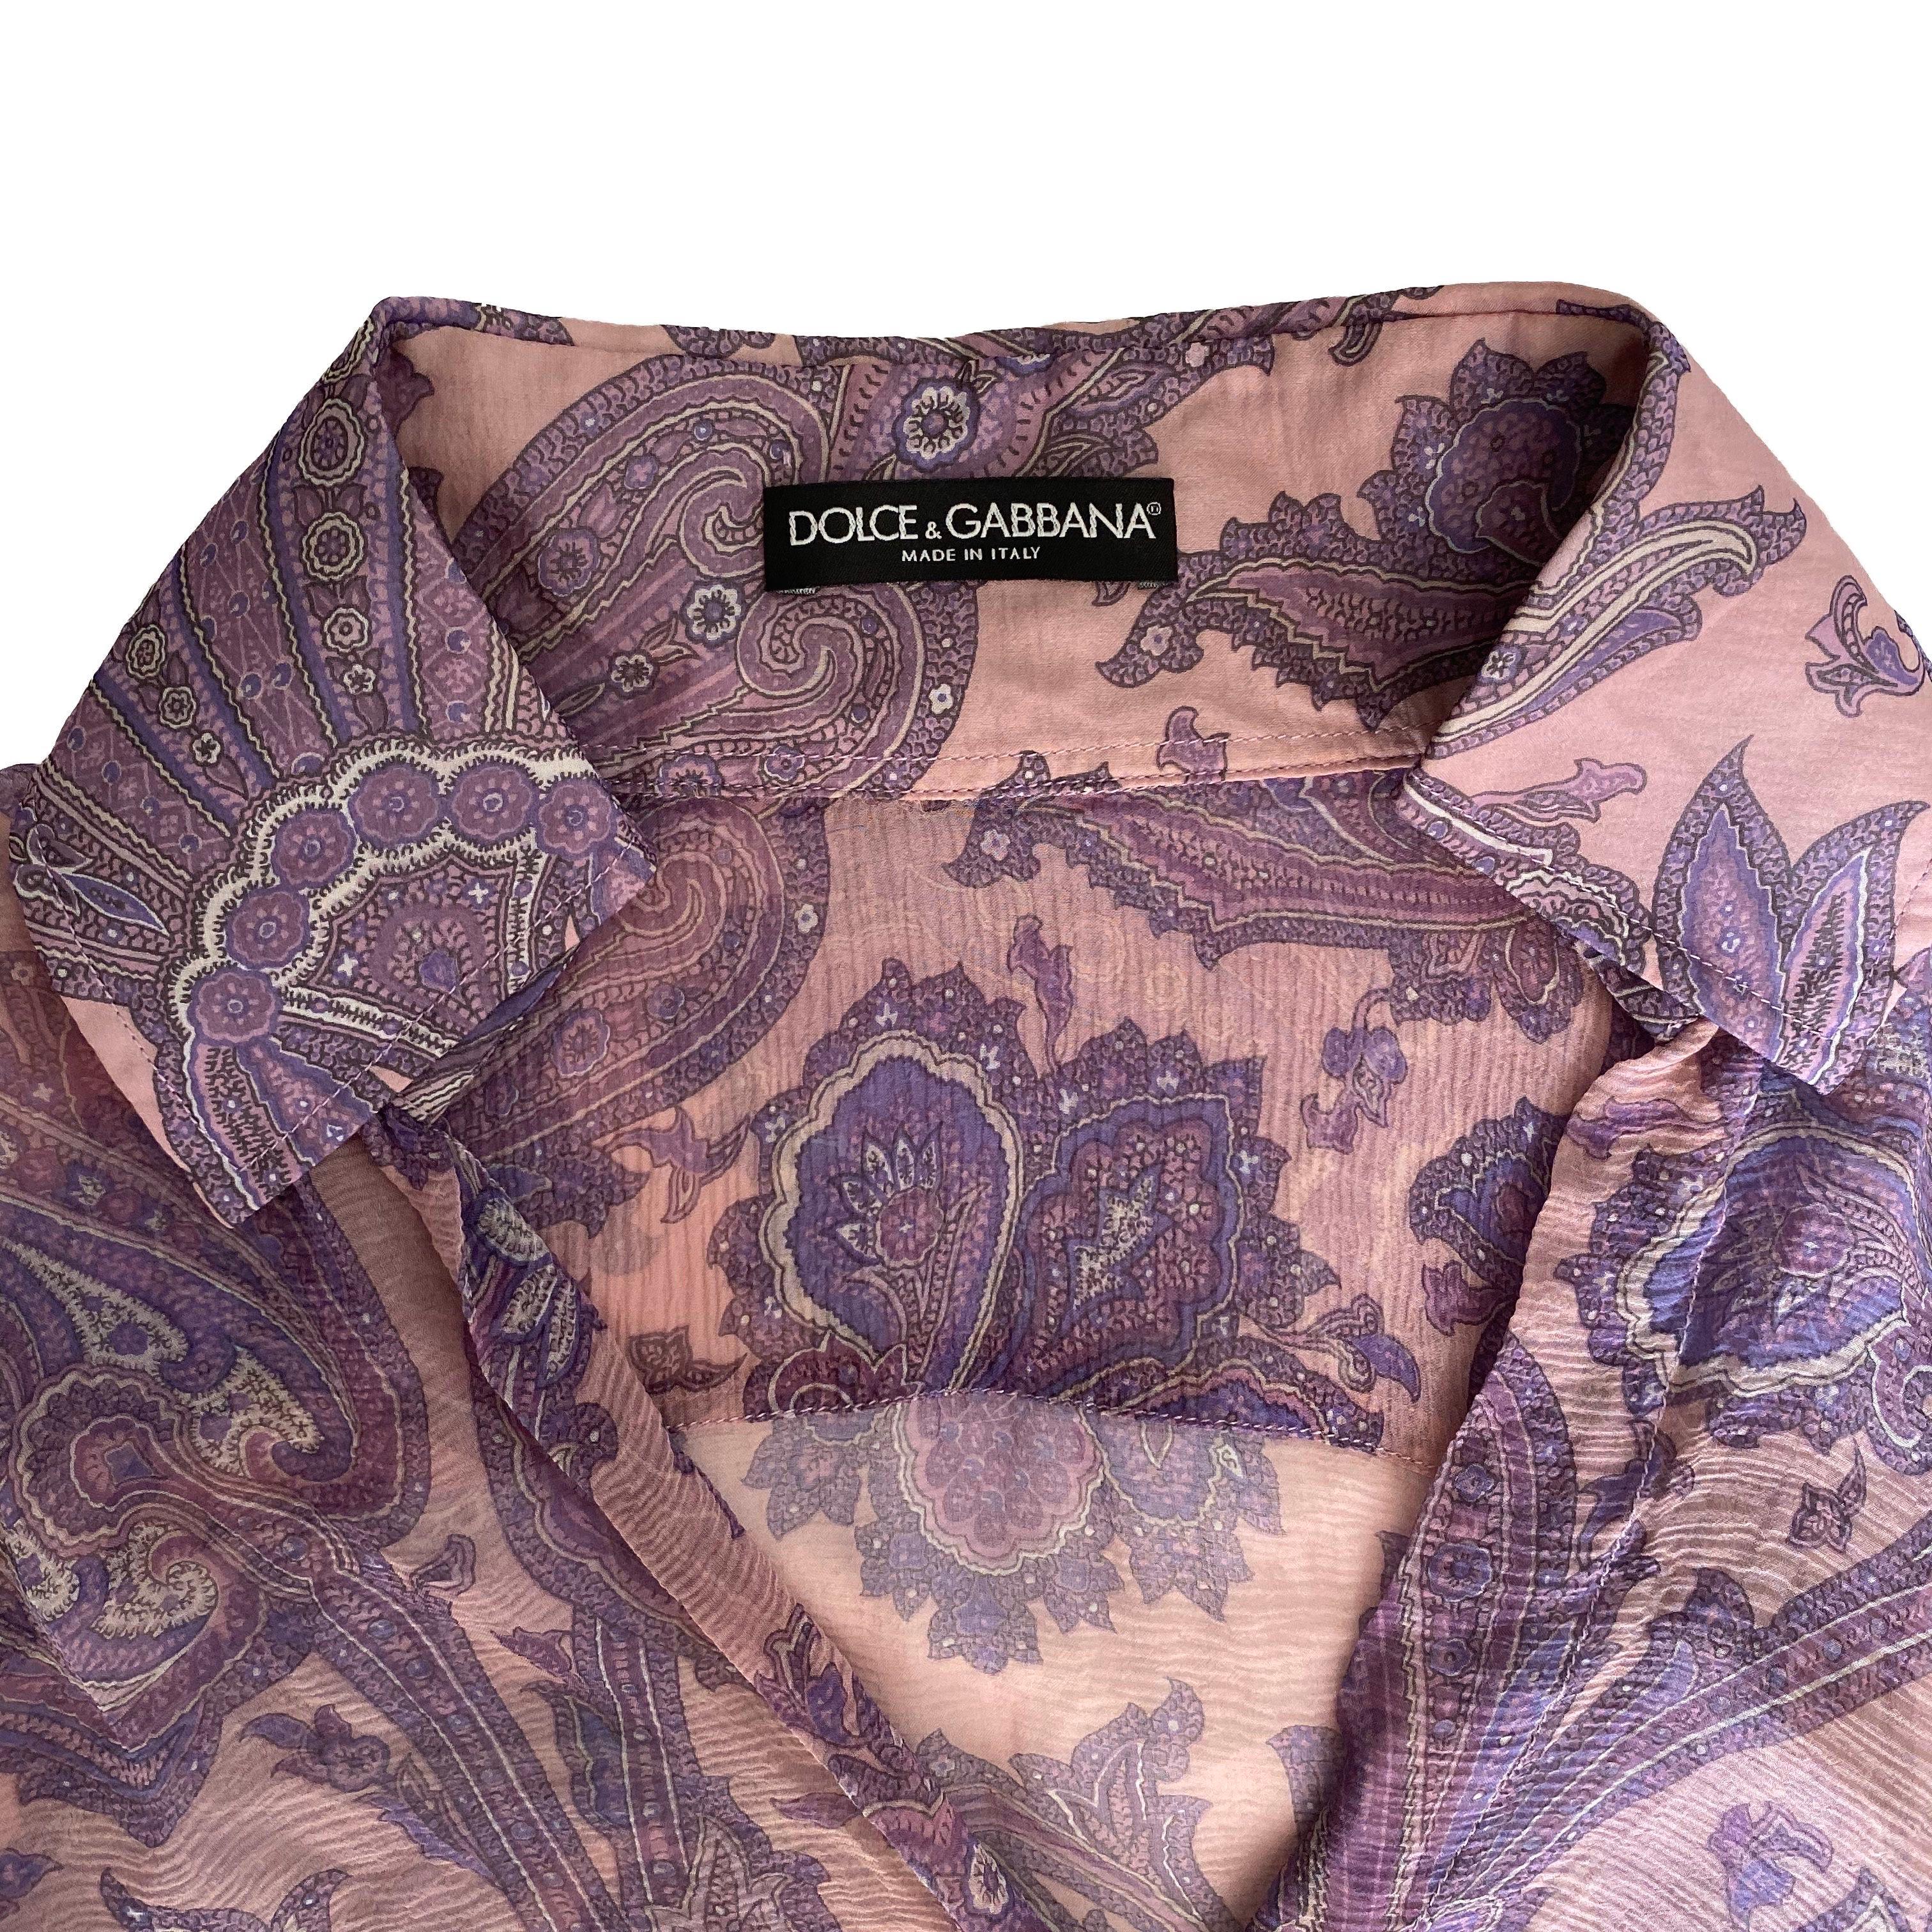 Gray Dolce & Gabbana S/S 2000 “Mix & Match” Purple Paisley Shirt